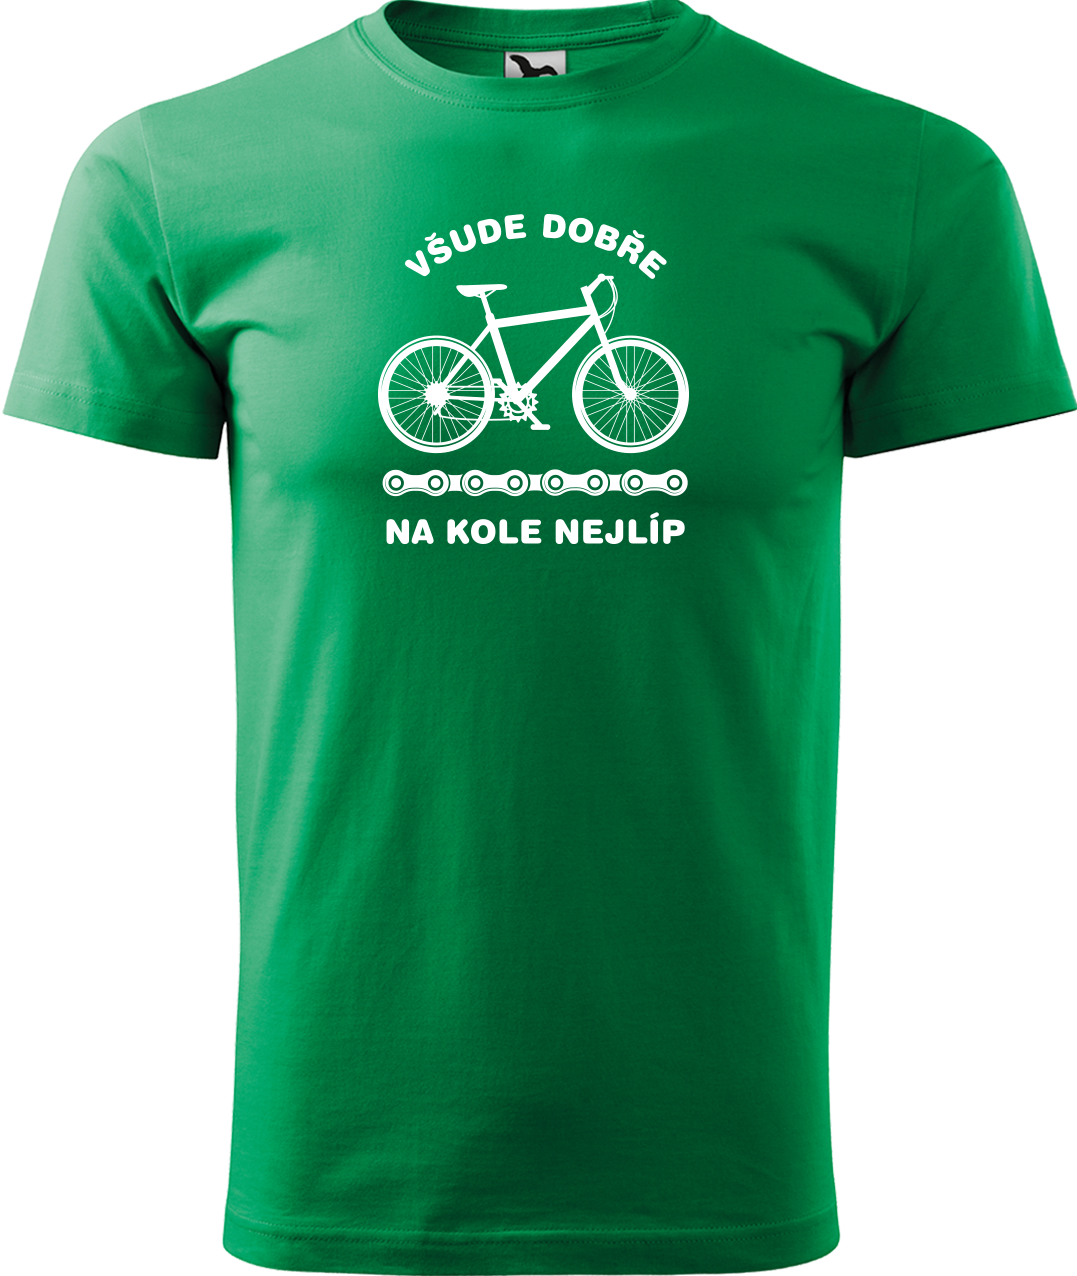 Pánské tričko s kolem - Všude dobře, na kole nejlíp Velikost: XL, Barva: Středně zelená (16)